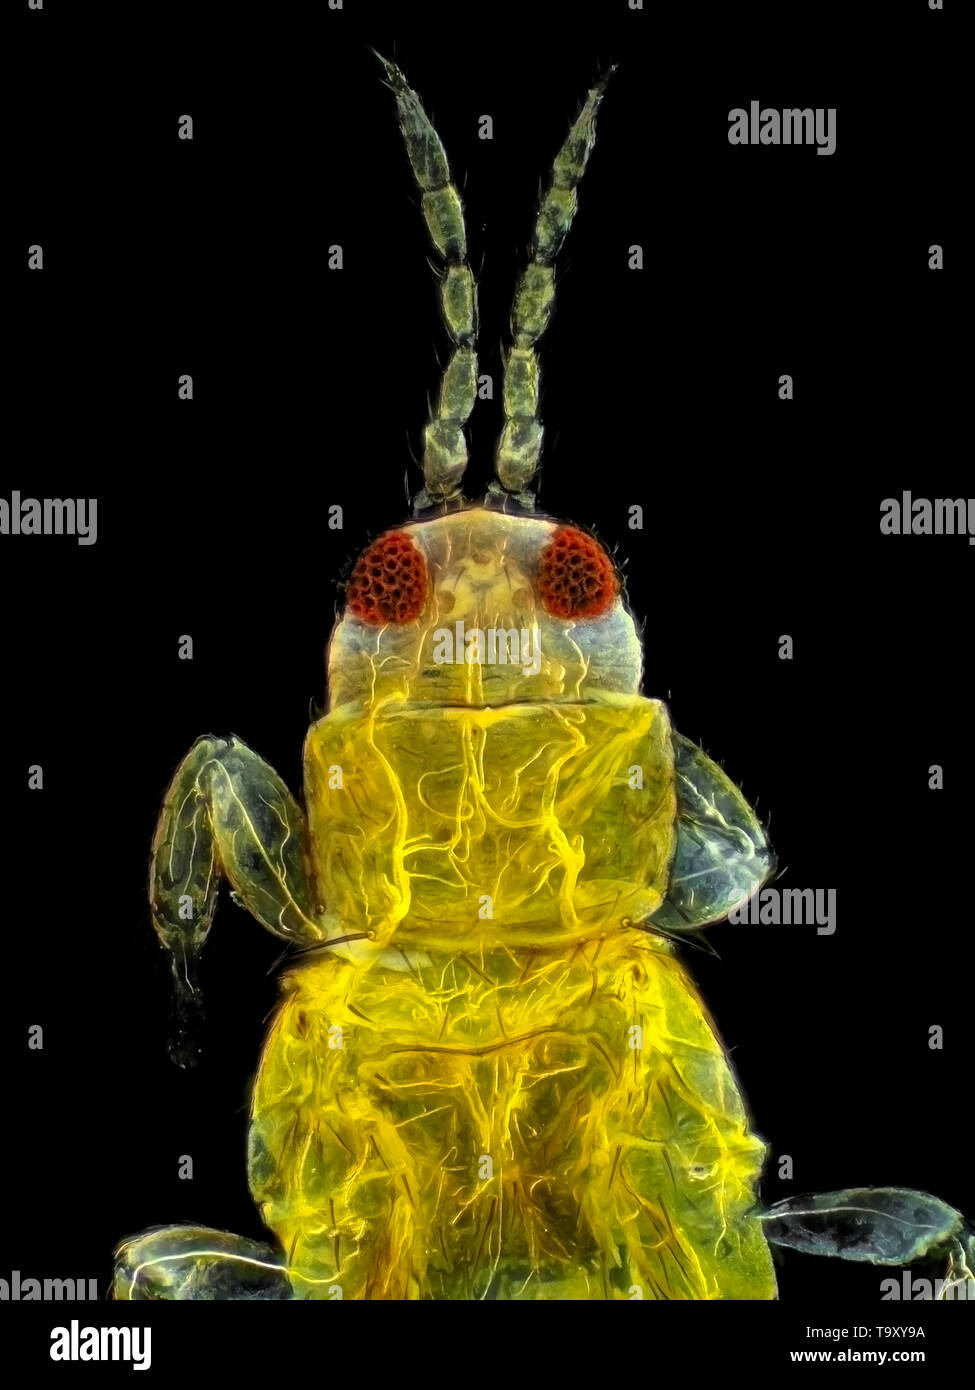 Los trips (probablemente Thripidae), campo oscuro micrografía, campo de visión es de aproximadamente 0,61mm de alto (sensor de magnificación de 28x) Foto de stock